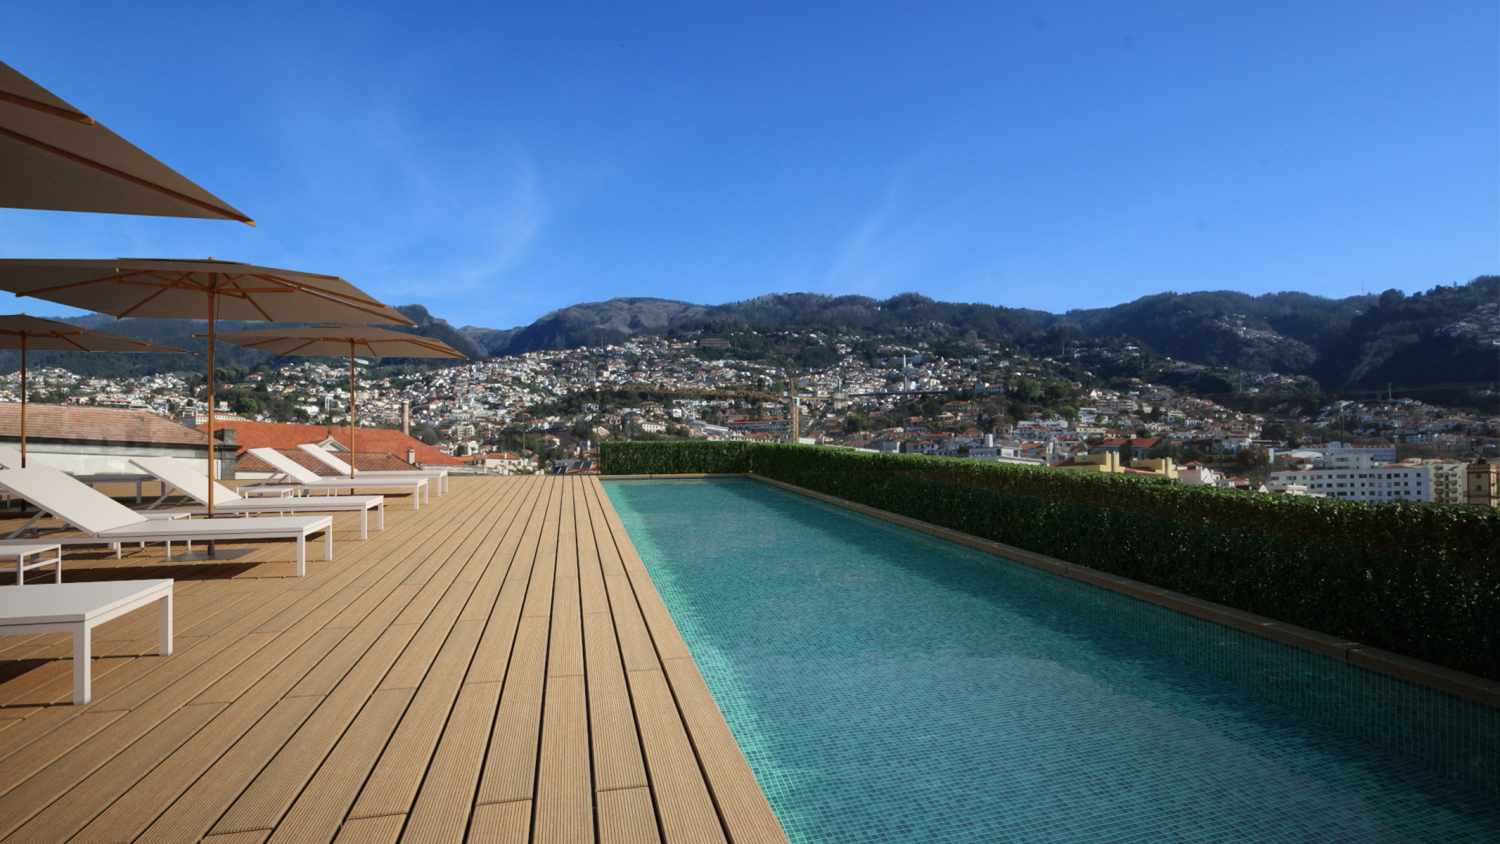 Castanheiro Boutique Hotel, Funchal, Madeira, Portugal